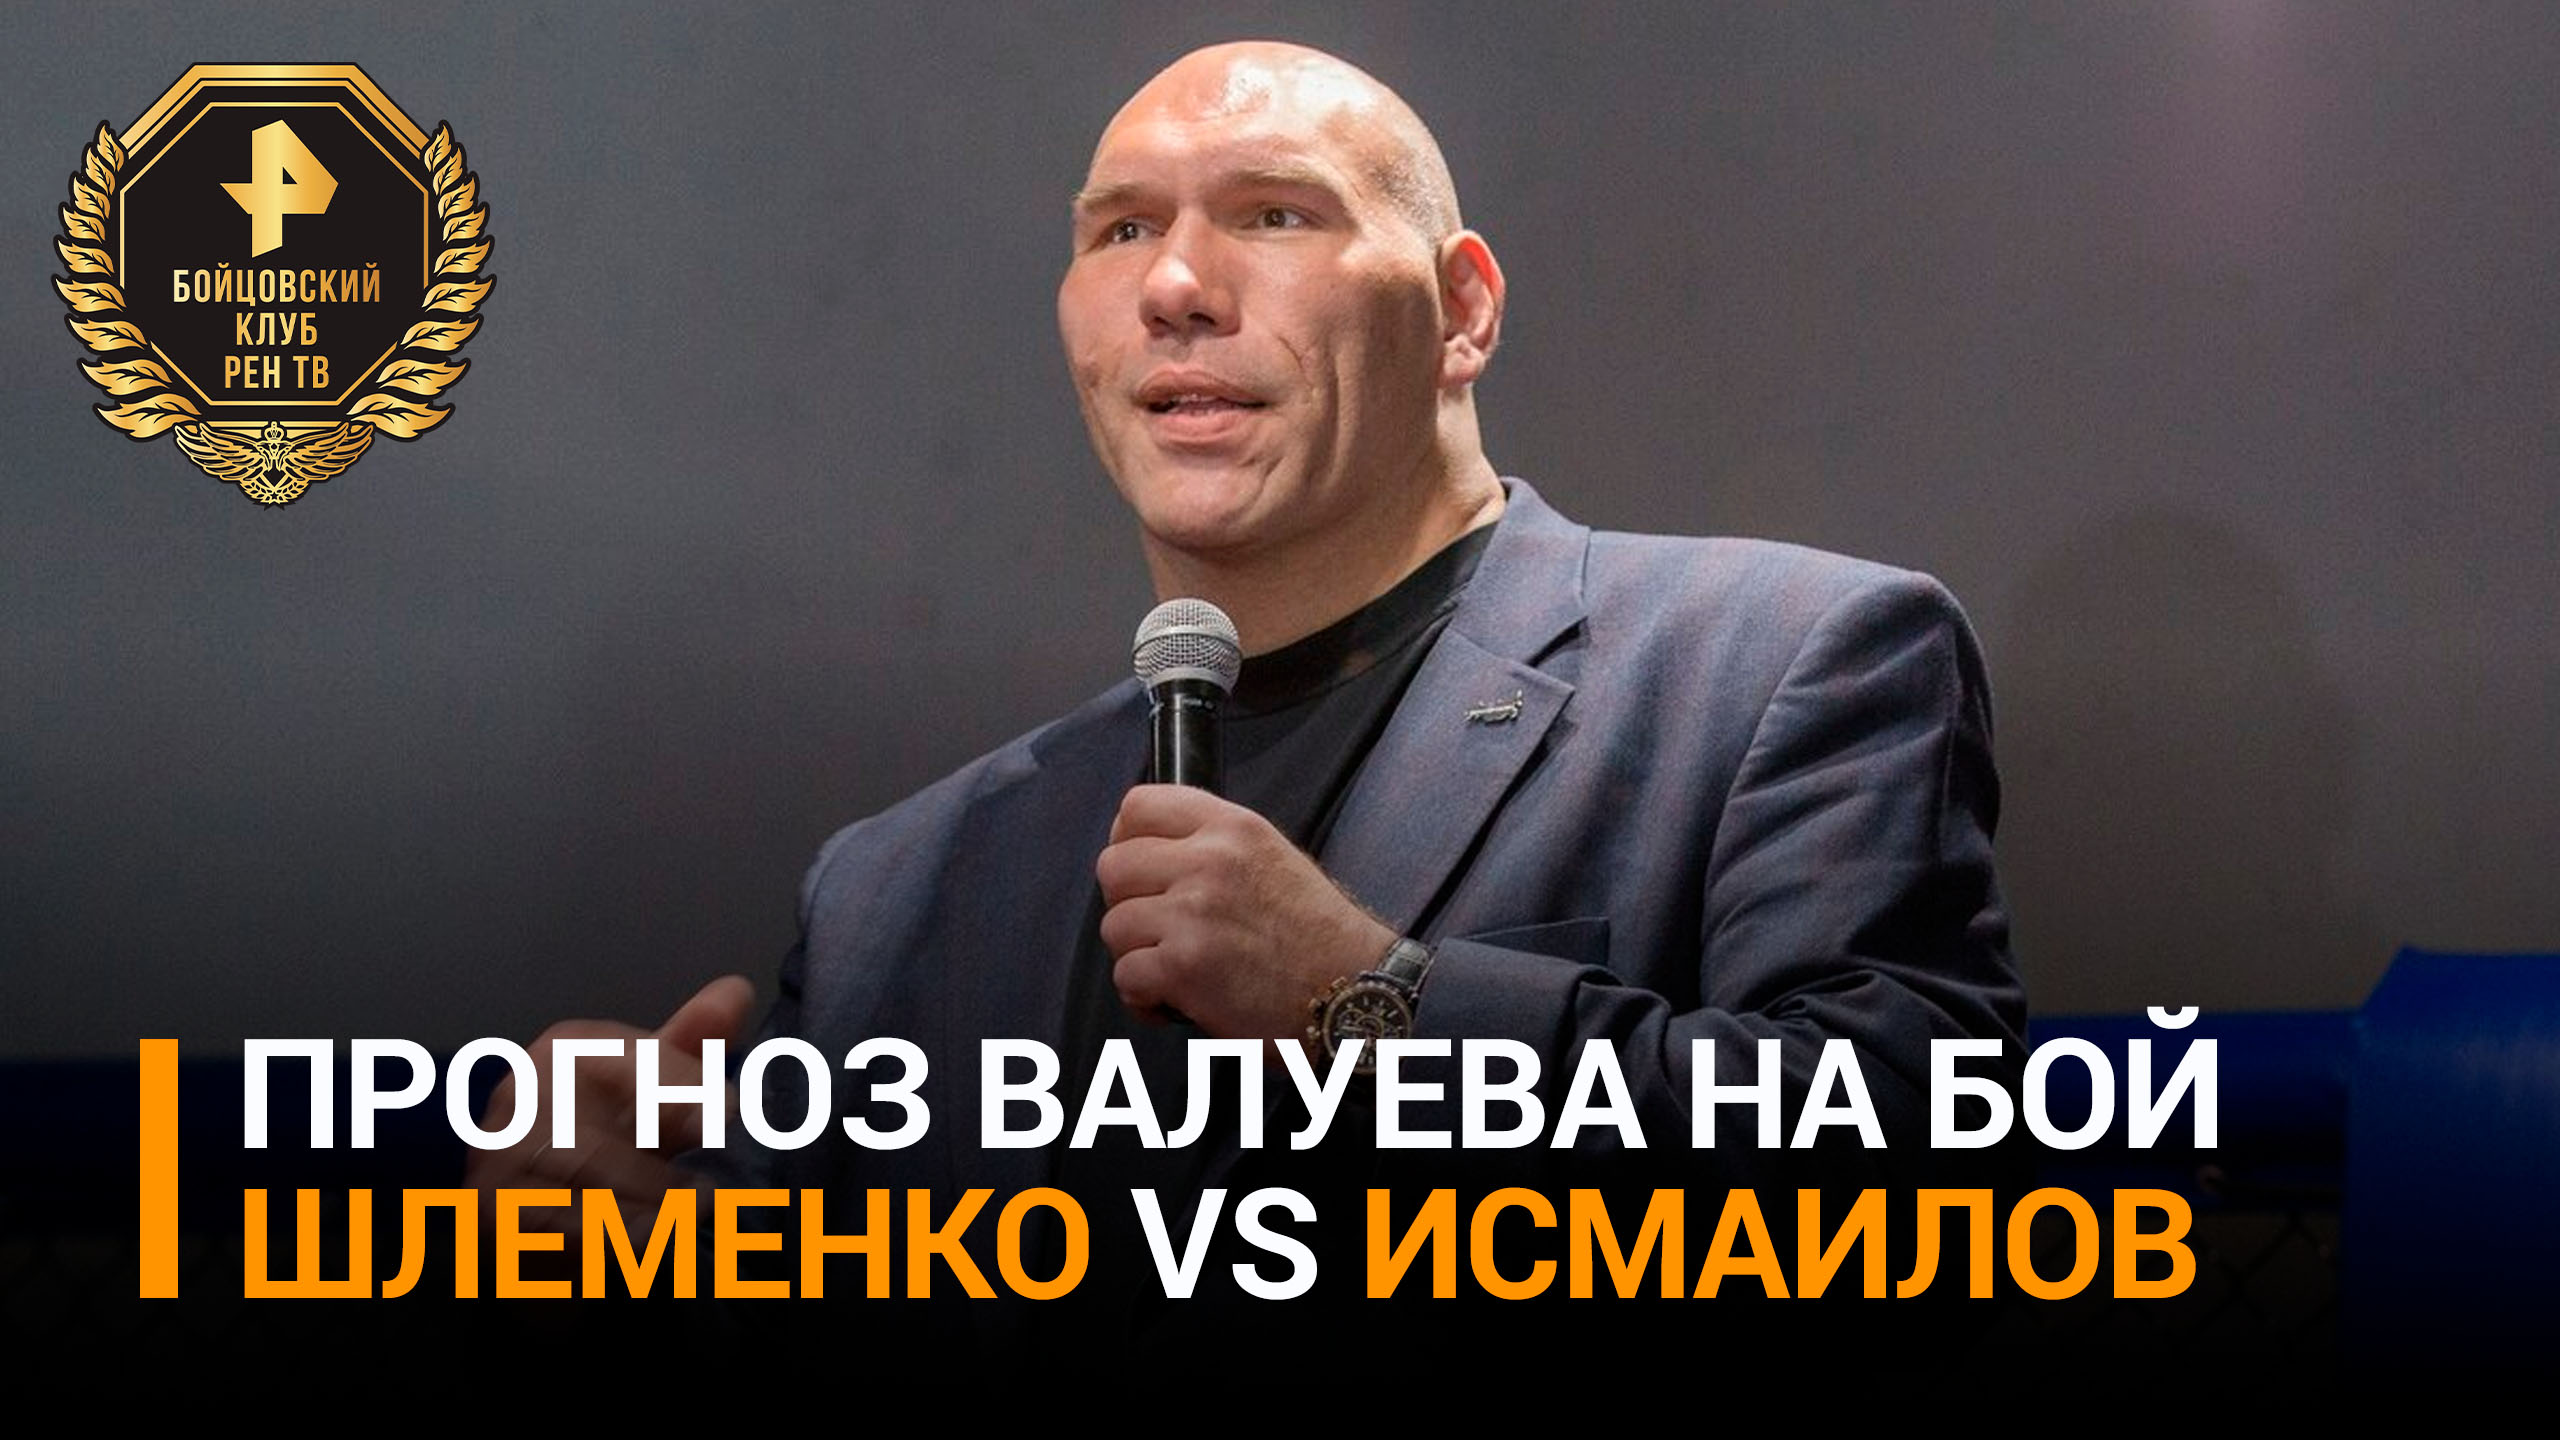 Валуев: Магомед Исмаилов в бою с Александром Шлеменко будет иметь преимущество в ударной технике